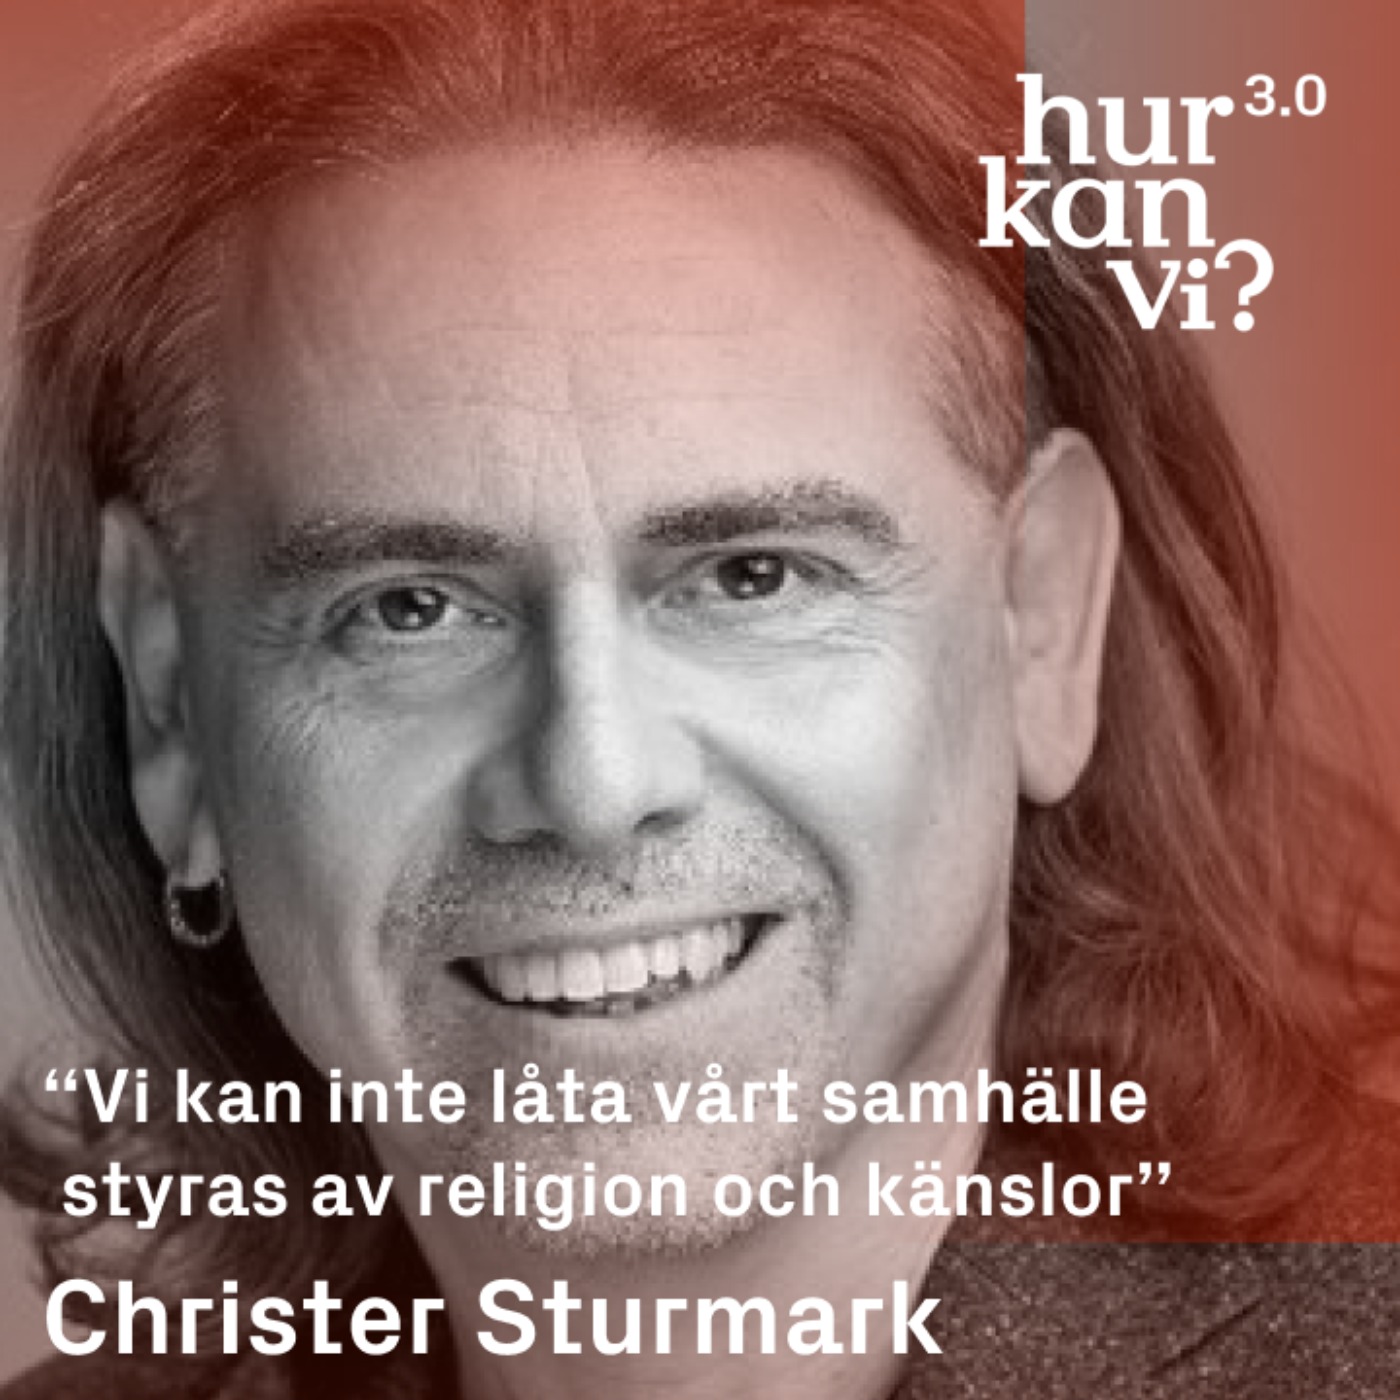 Christer Sturmark - “Vi kan inte låta vårt samhälle styras av religion och känslor”